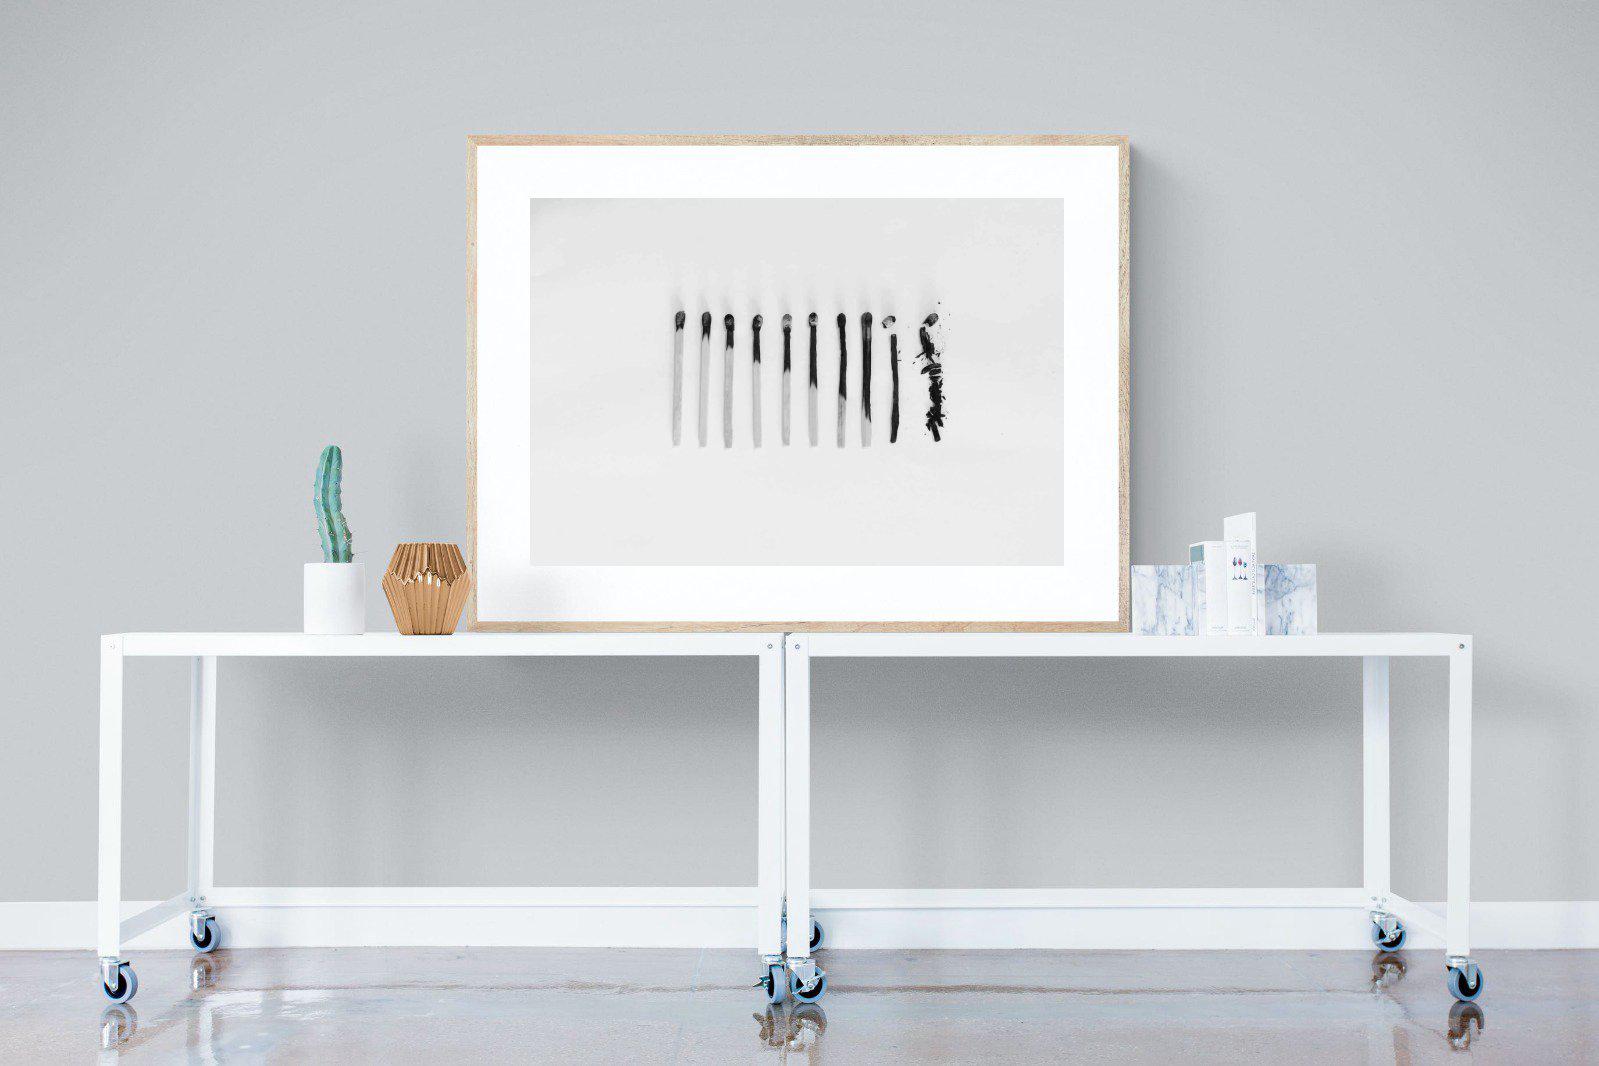 Matchsticks-Wall_Art-120 x 90cm-Framed Print-Wood-Pixalot